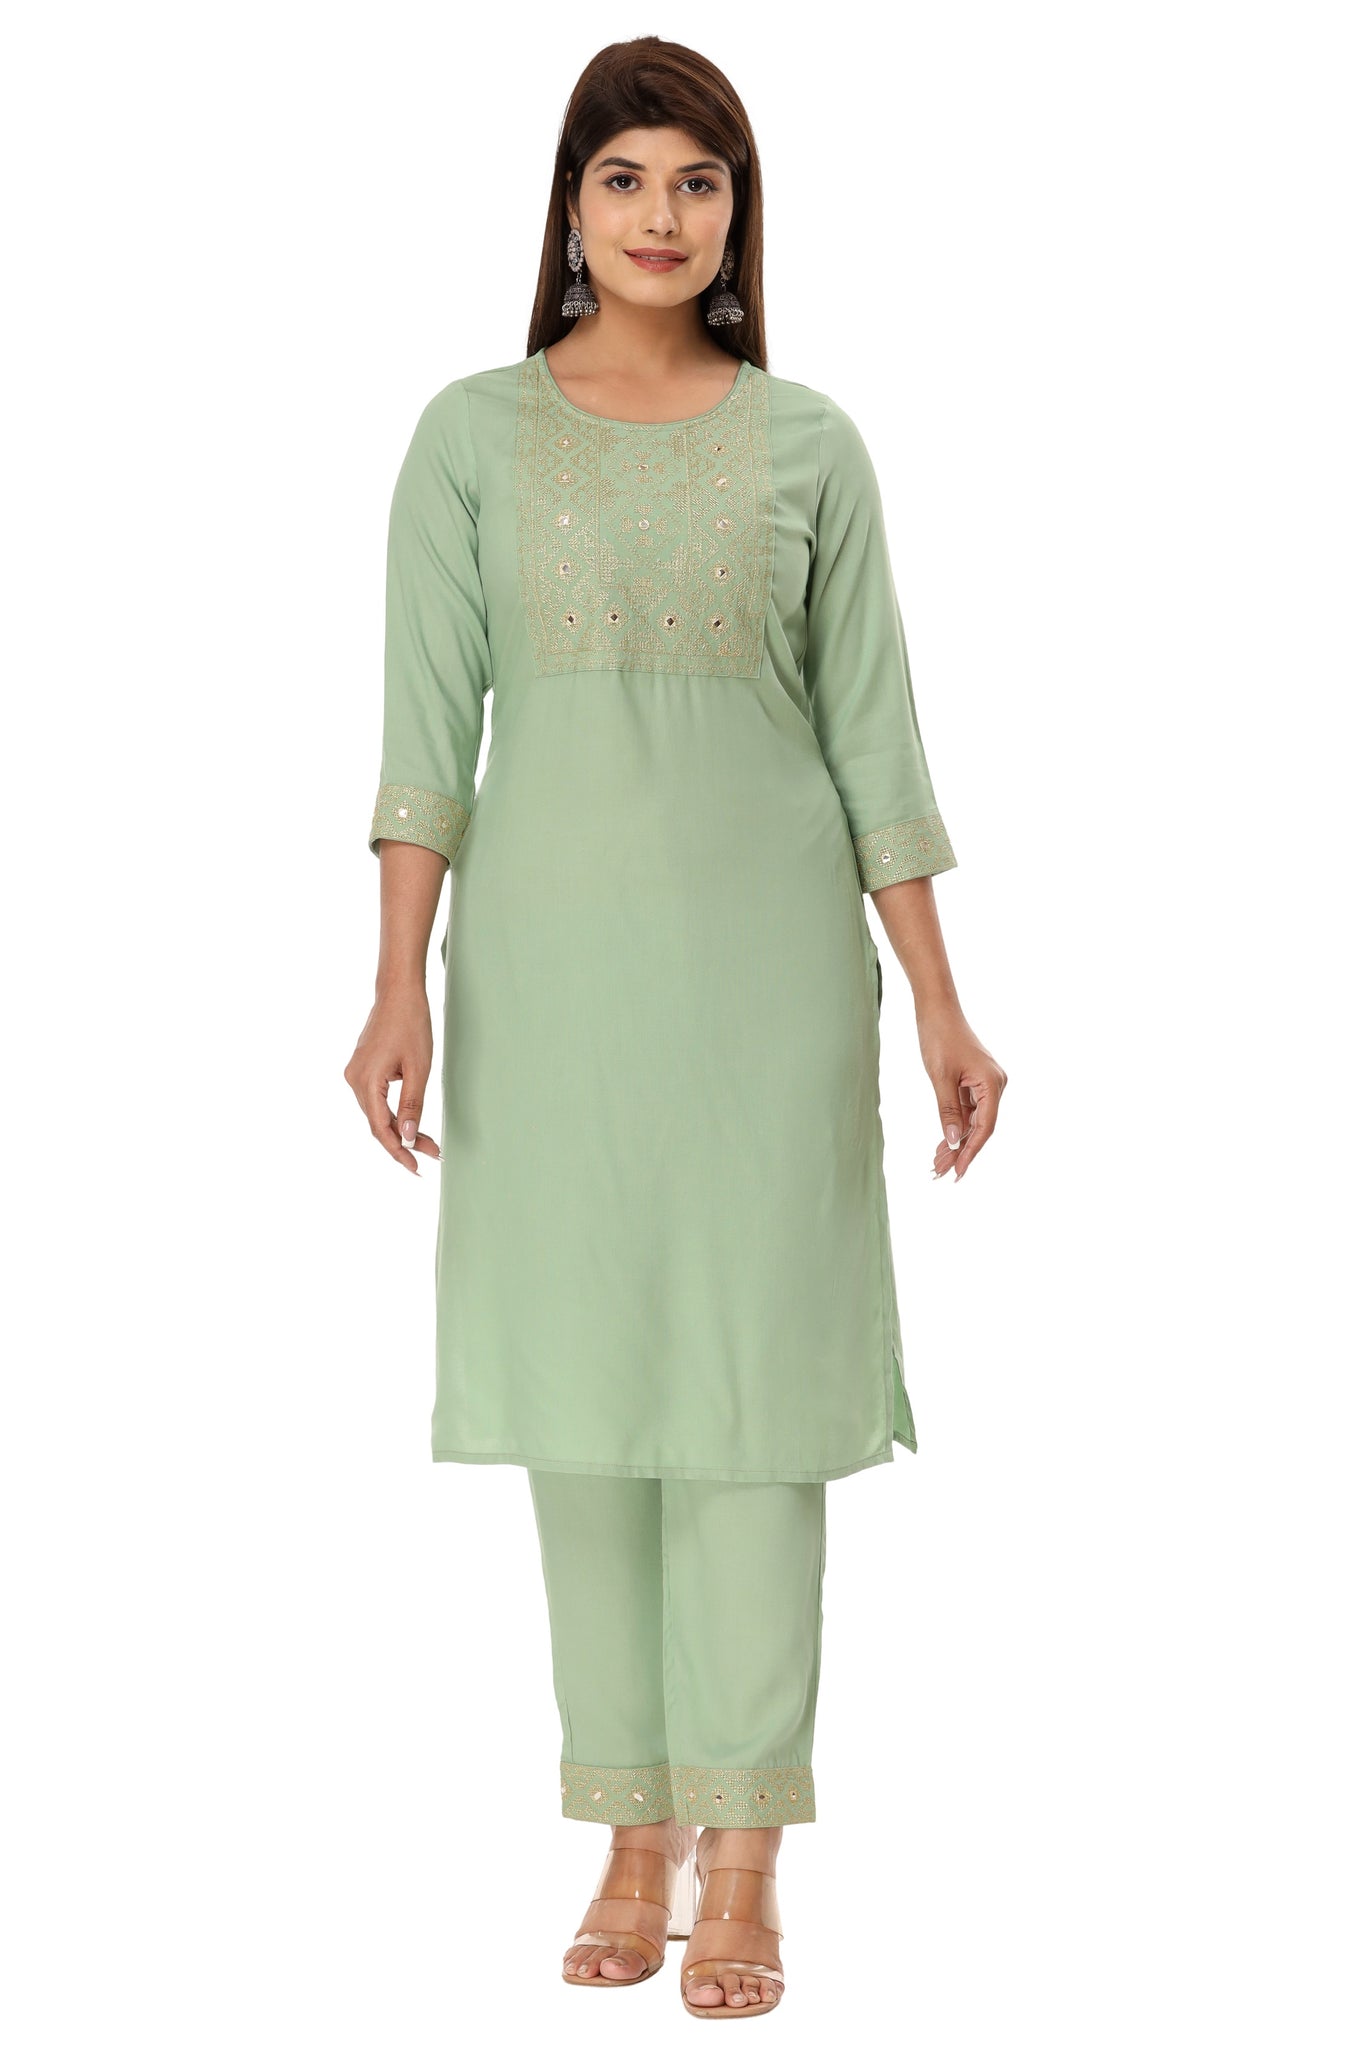 Buy Indian Ethnic Wear | Kurti & Suit Set for Women & Girls Online –  jaipurkurtius